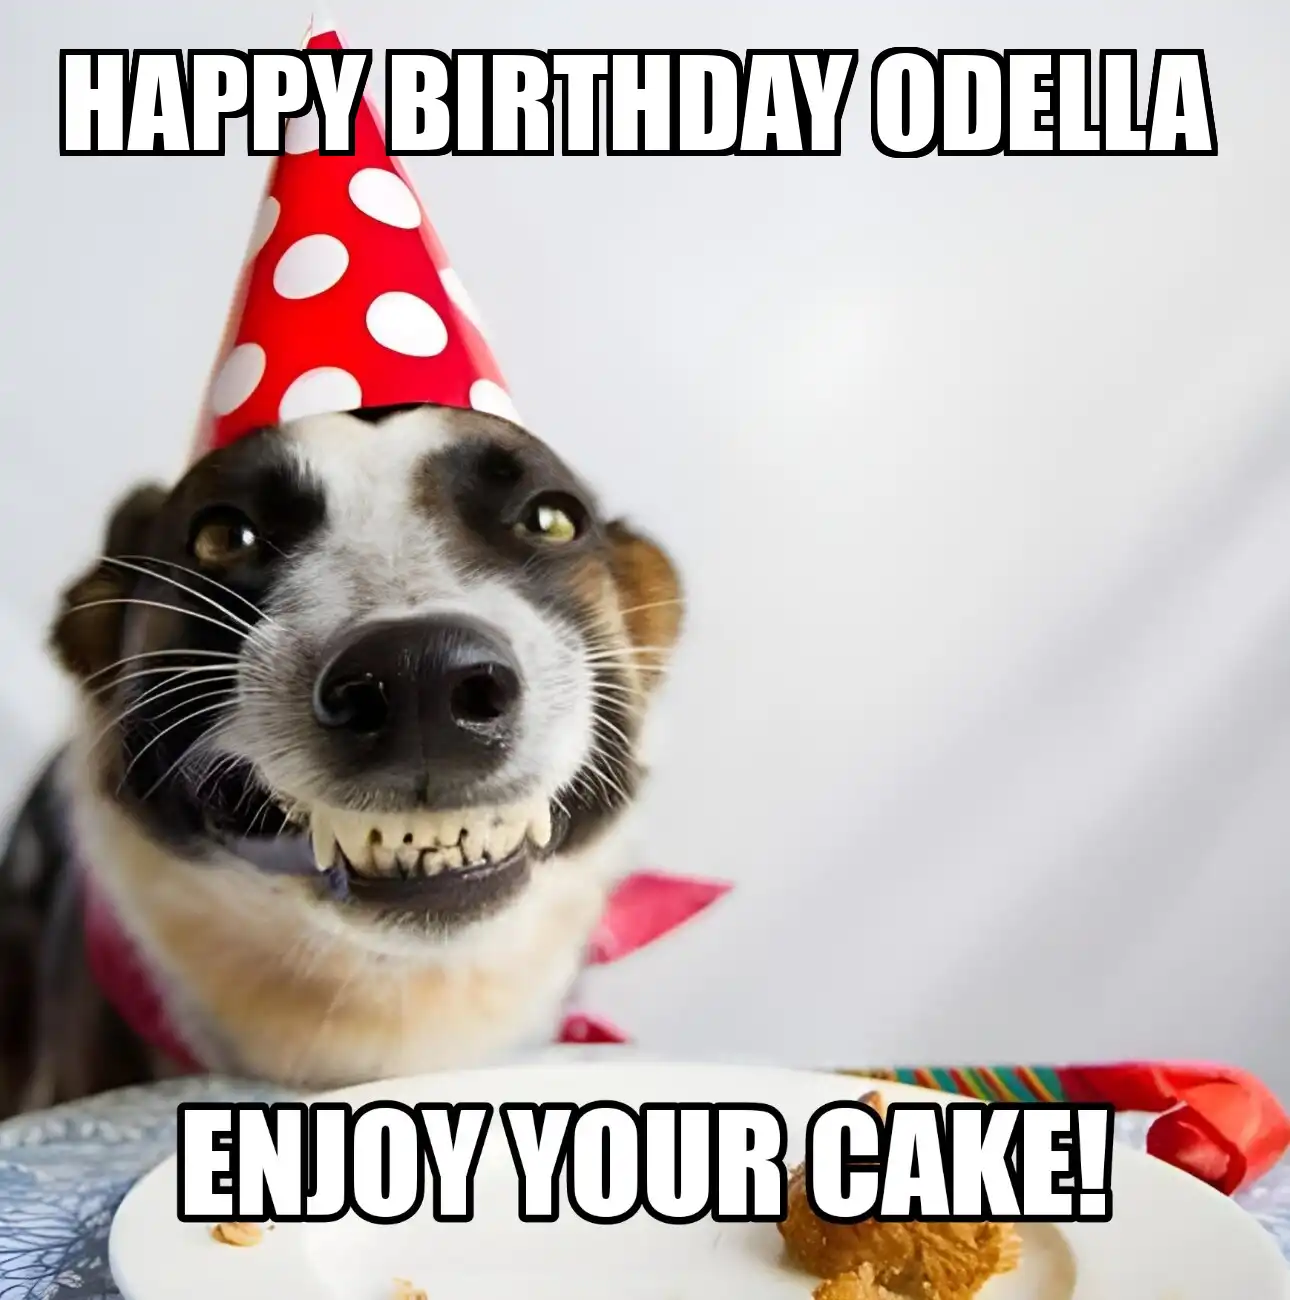 Happy Birthday Odella Enjoy Your Cake Dog Meme